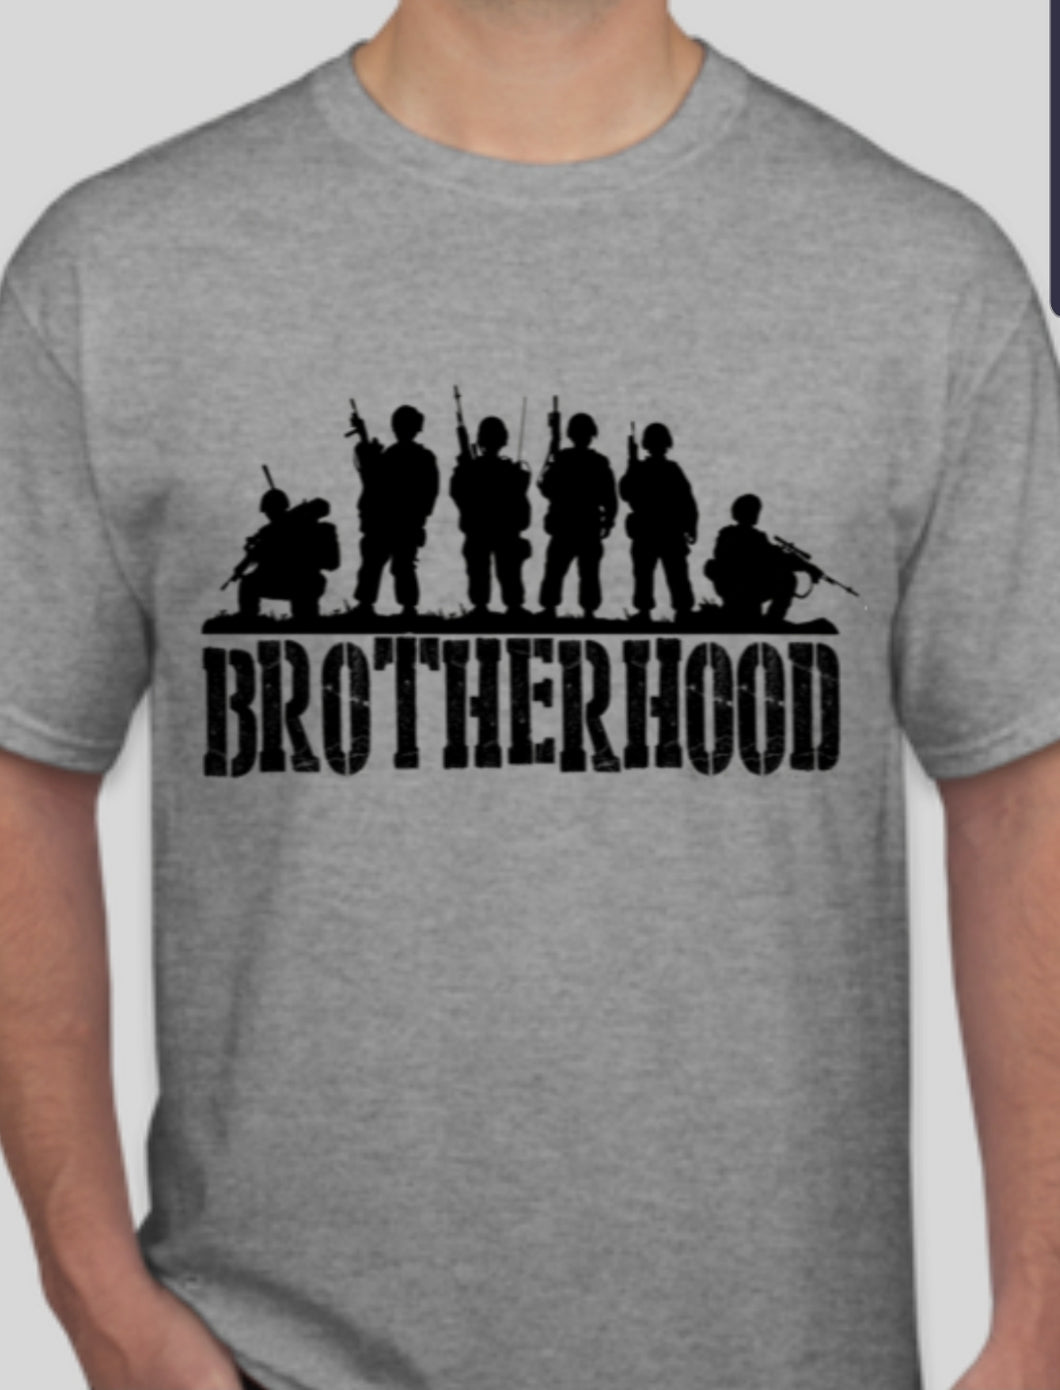 Military Humor - Brotherhood - Military Humor Stores